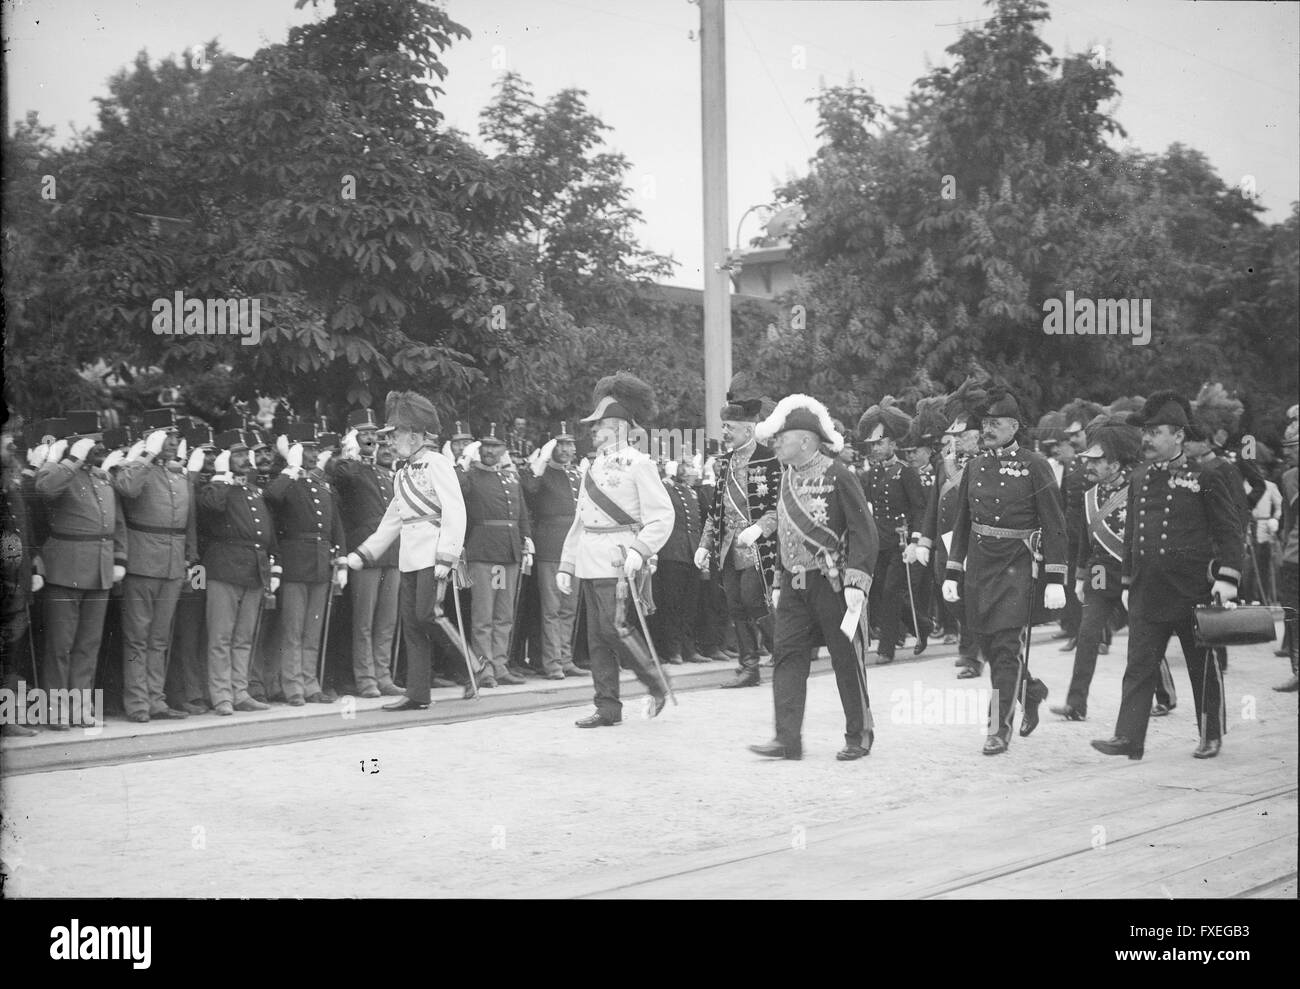 Reise nach Bosnien von Franz Josef I., Kaiser von Österreich, 1910 Foto Stock